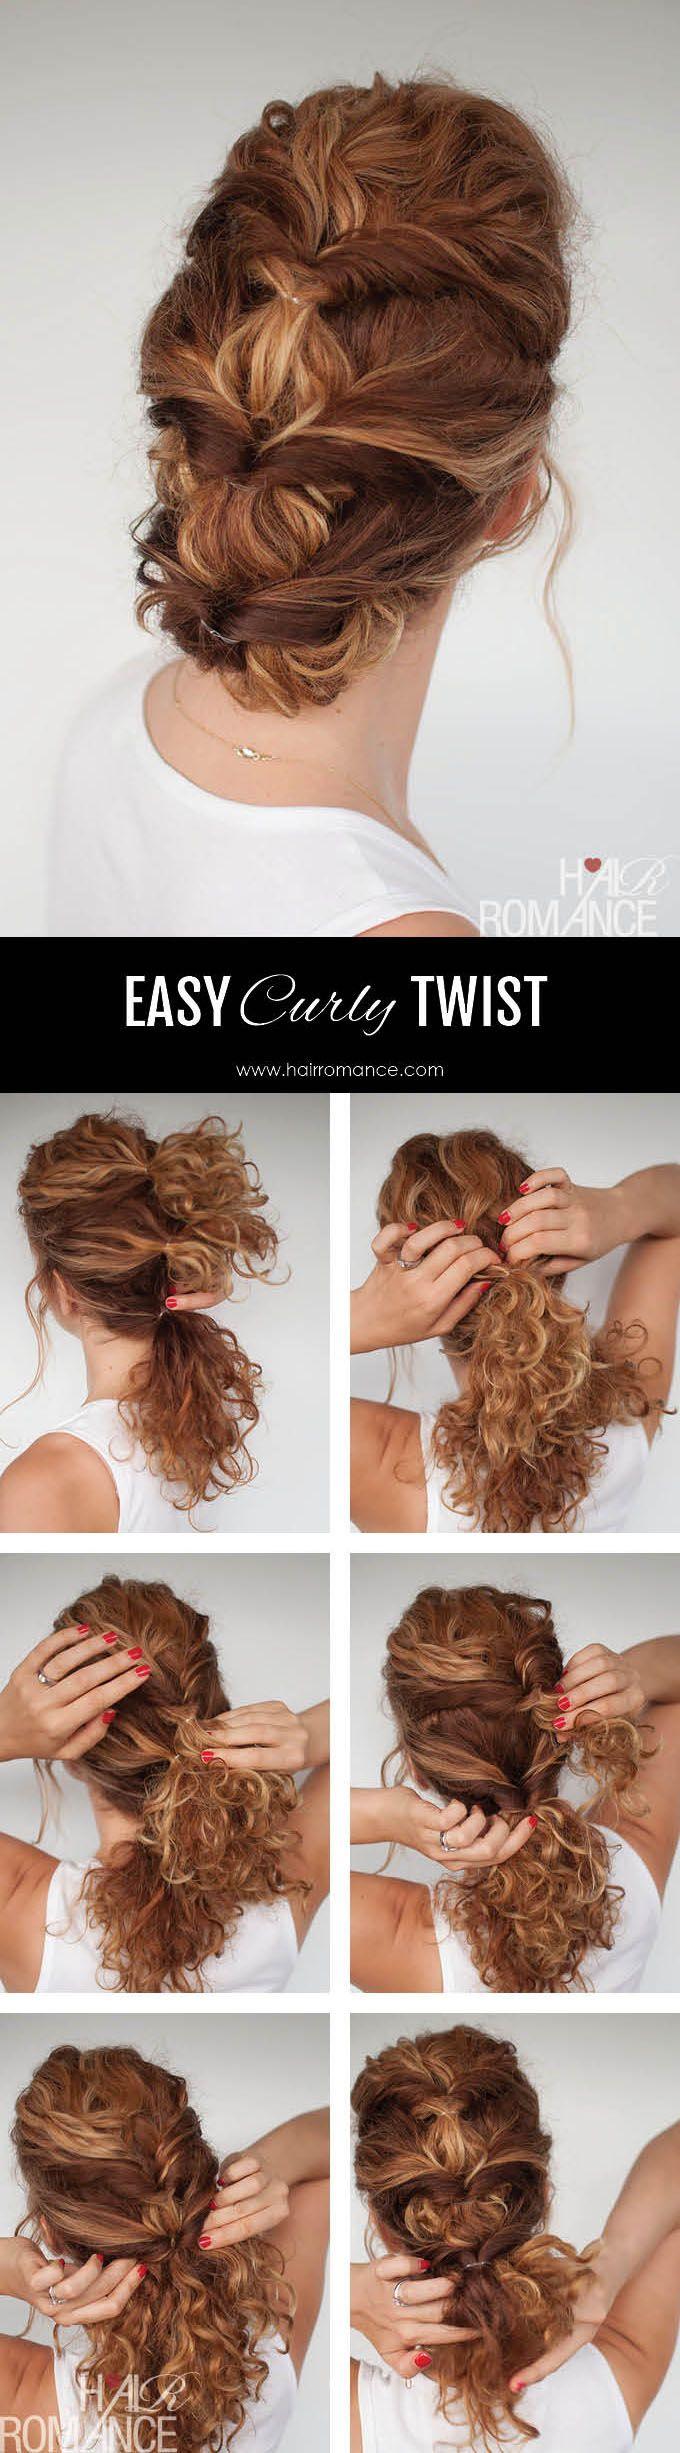 زفاف - Easy Everyday Curly Hairstyle Tutorial - The Curly Twist